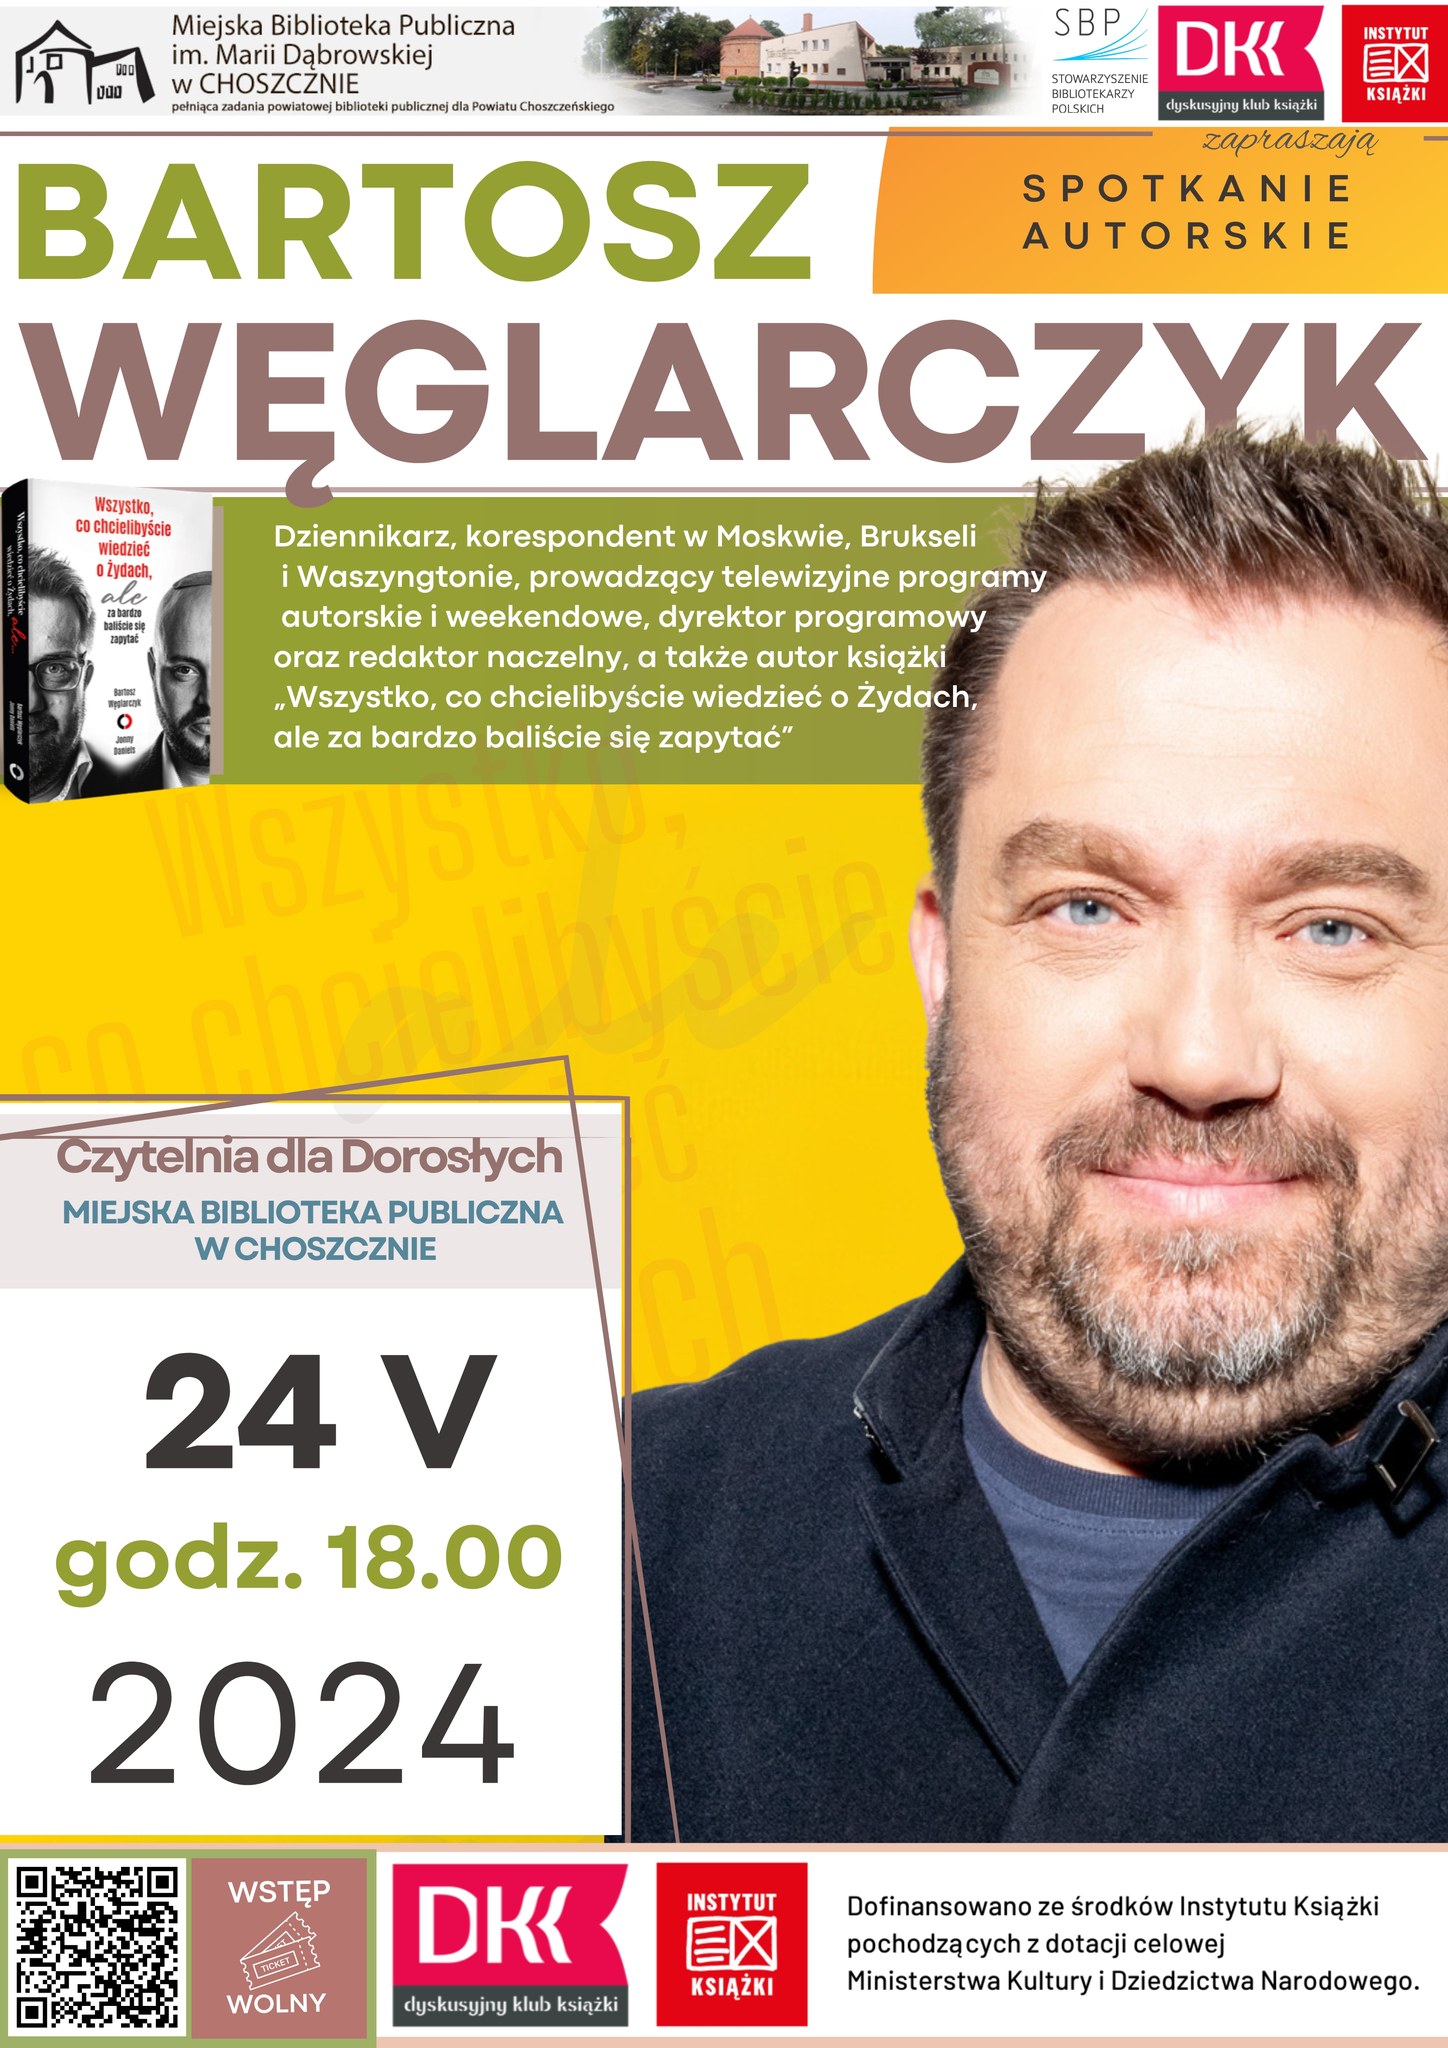 Bartosz Węglarczyk spotkanie autorskie